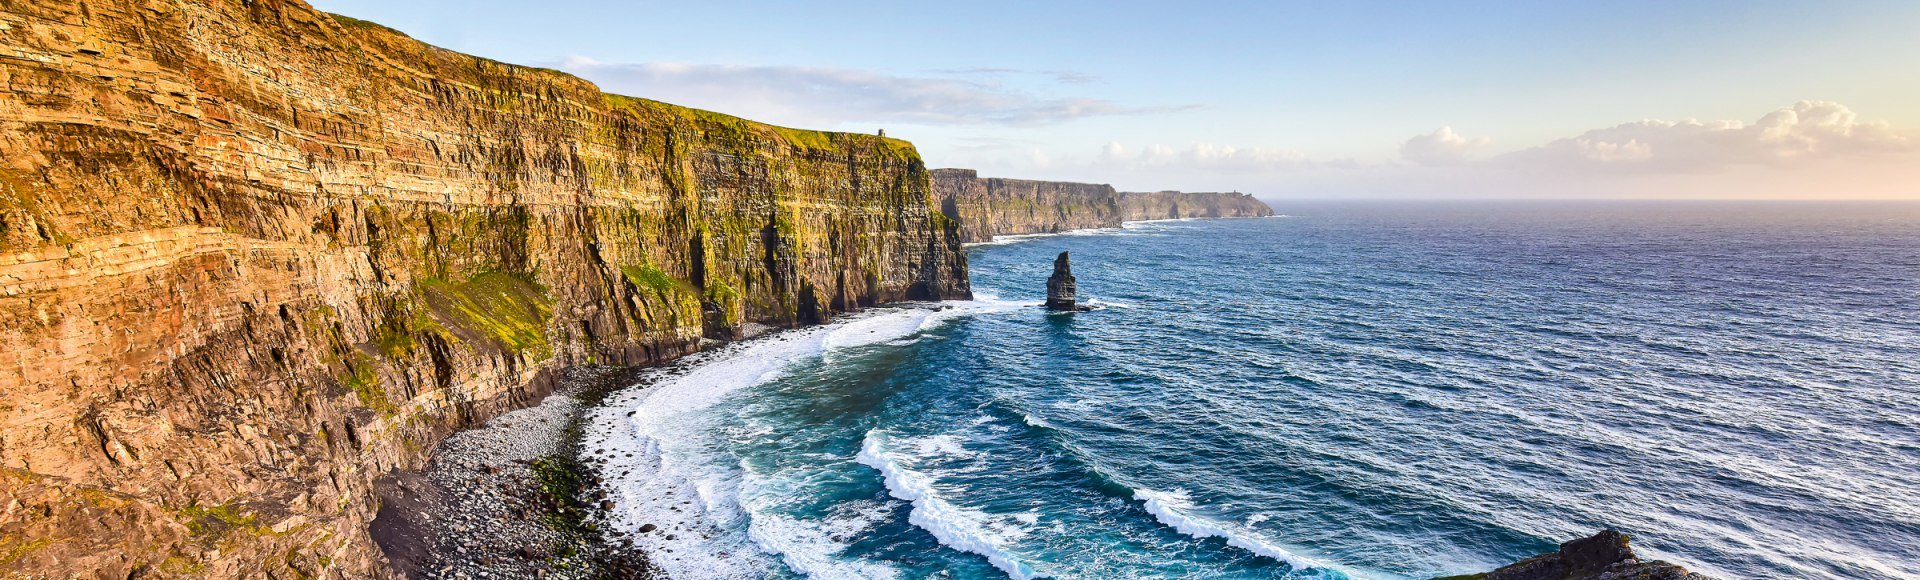 Die Klippen von Moher an der Westküste Irlands, © Istockphoto.com - JanMiko